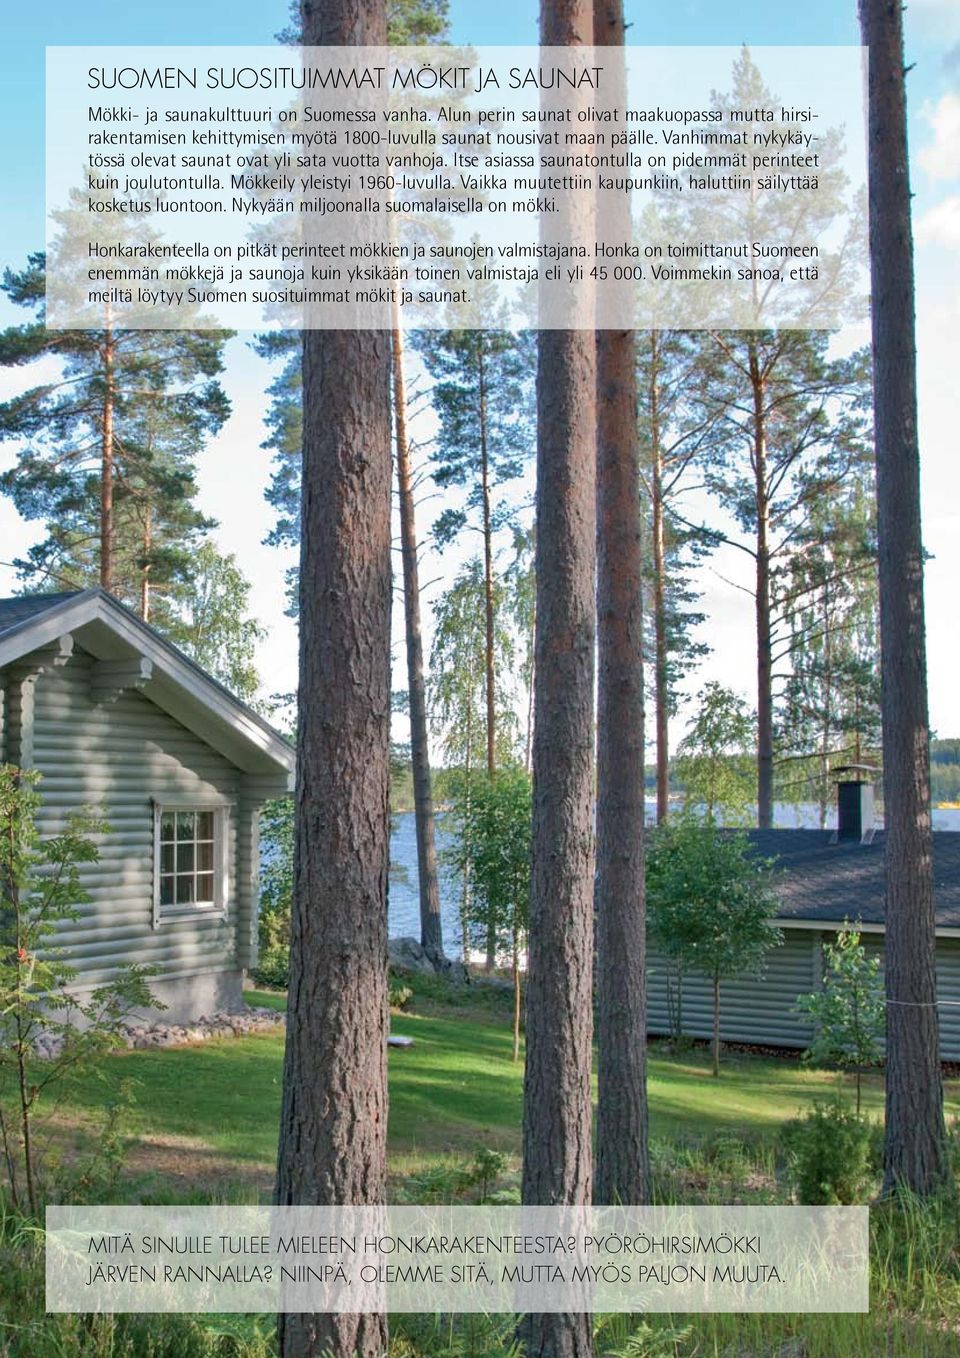 Vaikka muutettiin kaupunkiin, haluttiin säilyttää kosketus luontoon. Nykyään miljoonalla suomalaisella on mökki. Honkarakenteella on pitkät perinteet mökkien ja saunojen valmistajana.